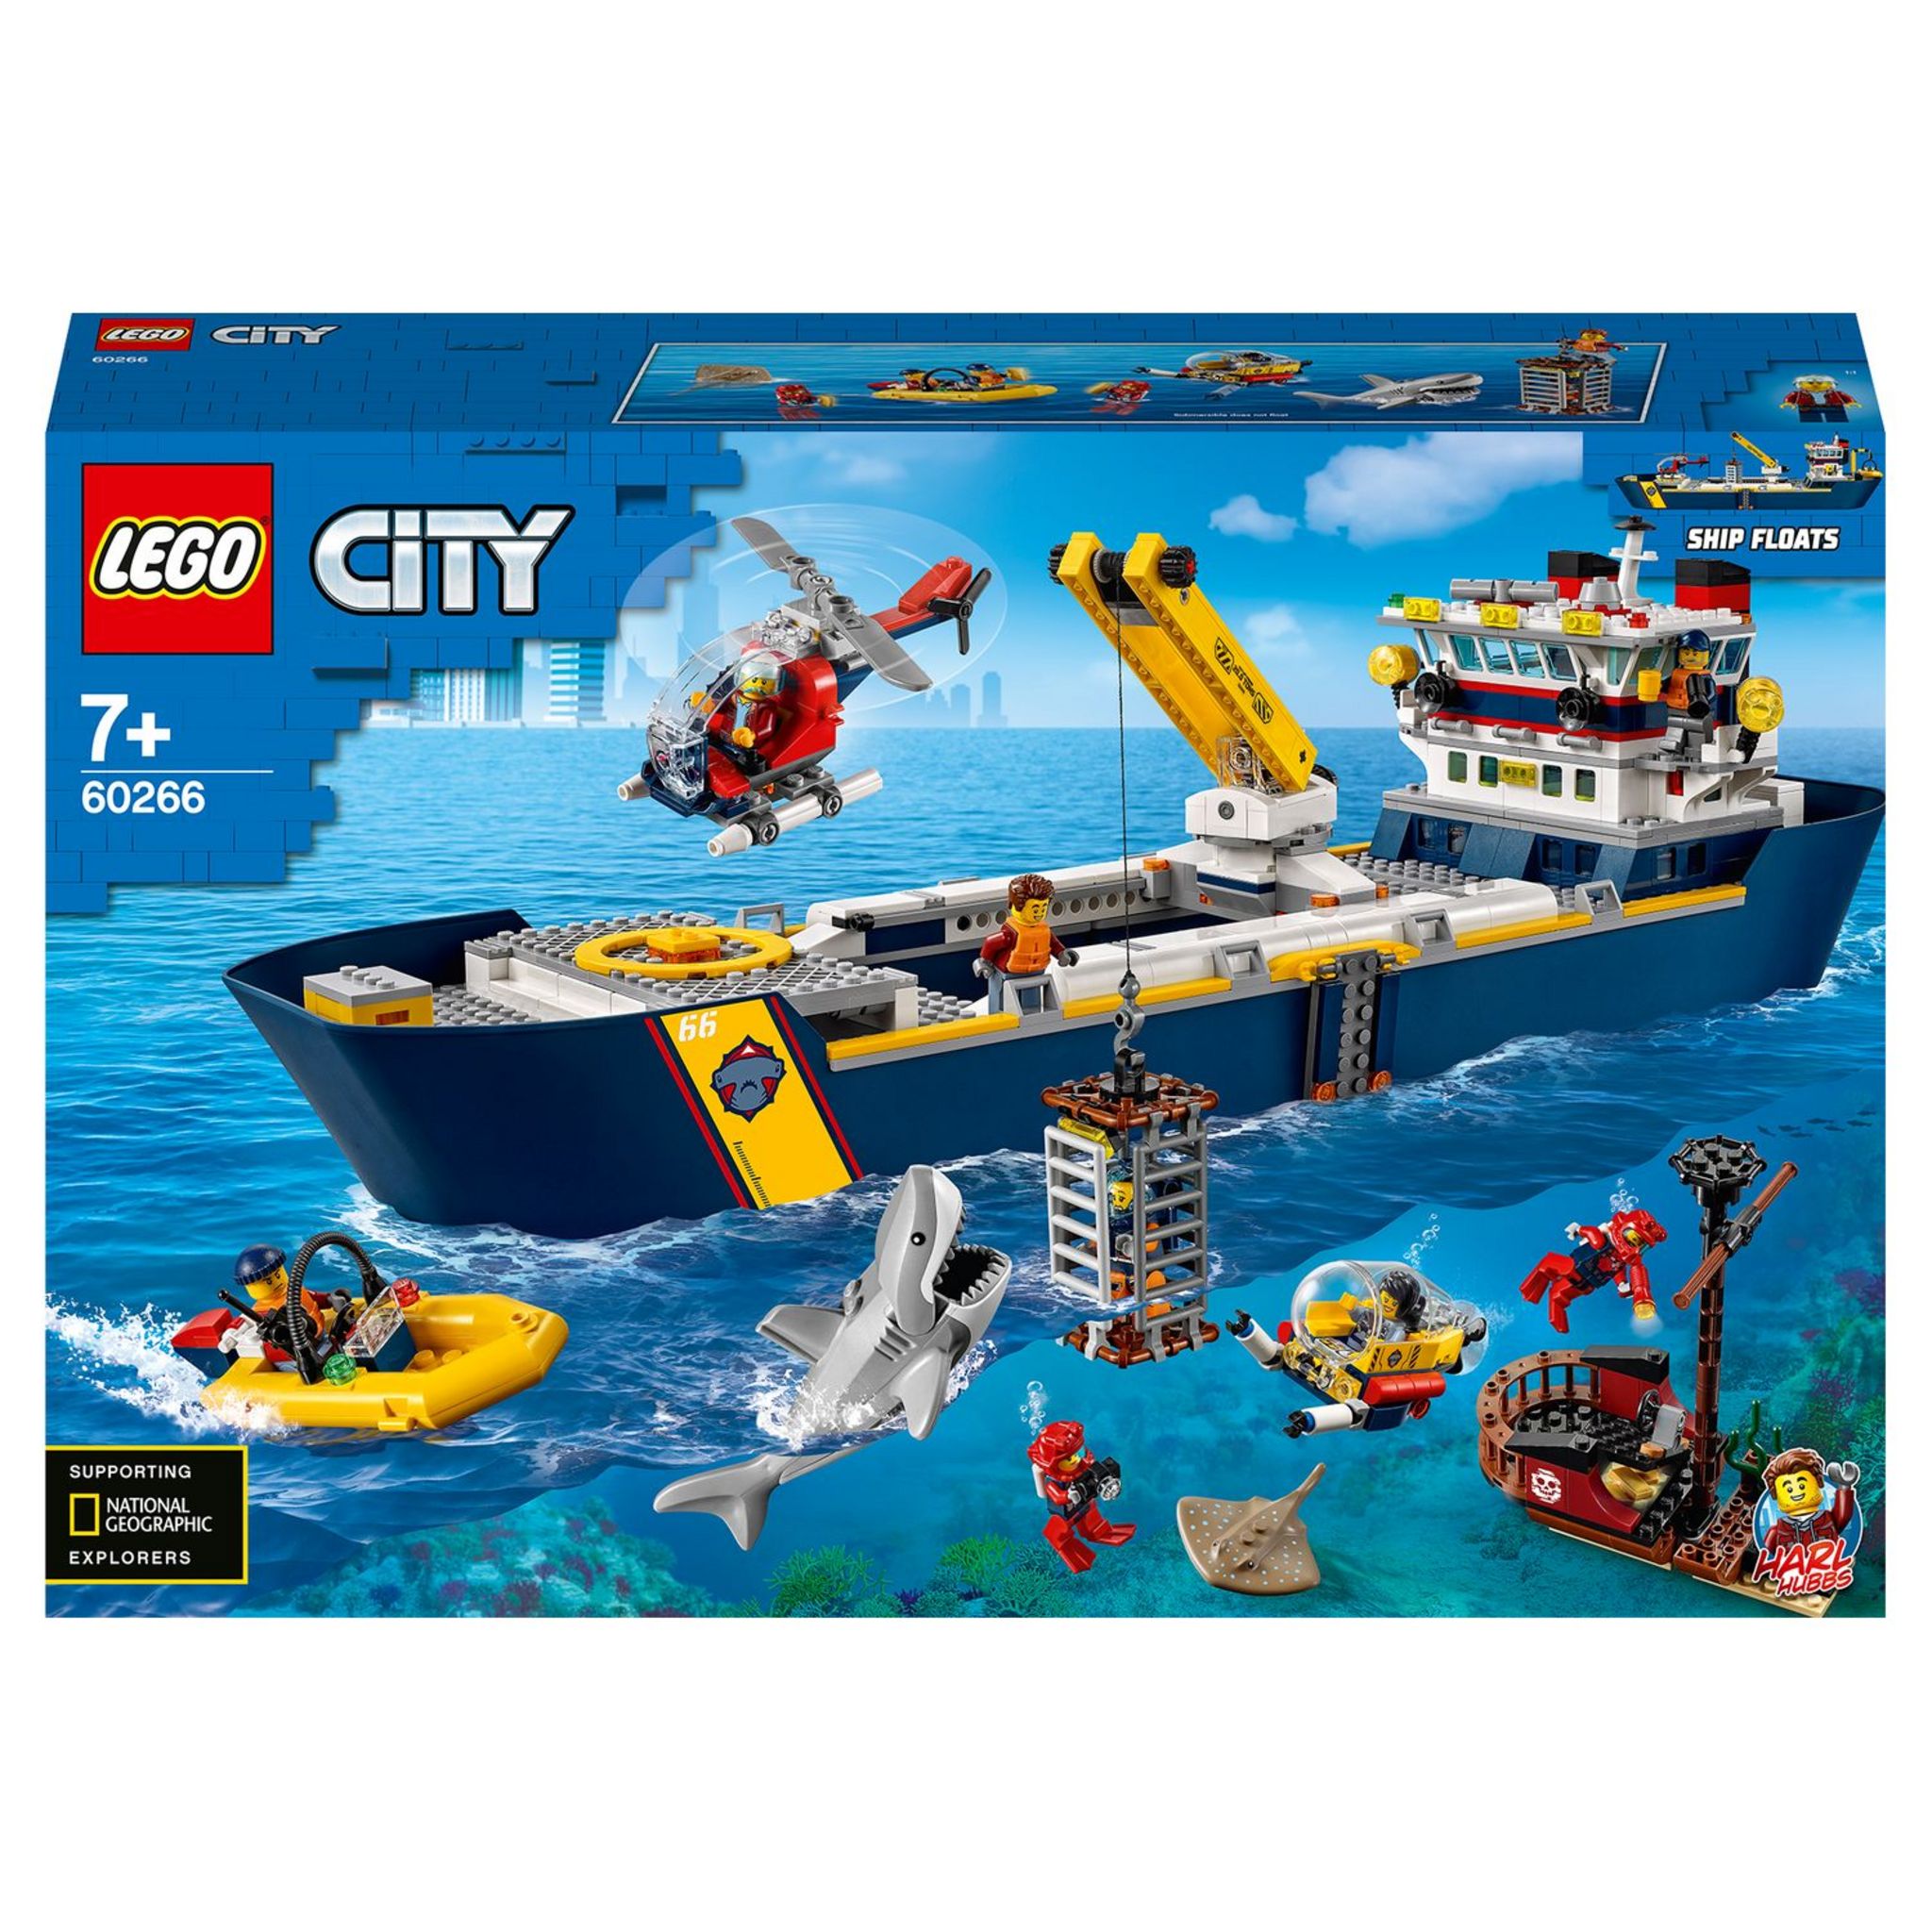 City 60266 - Le bateau d'exploration océanique